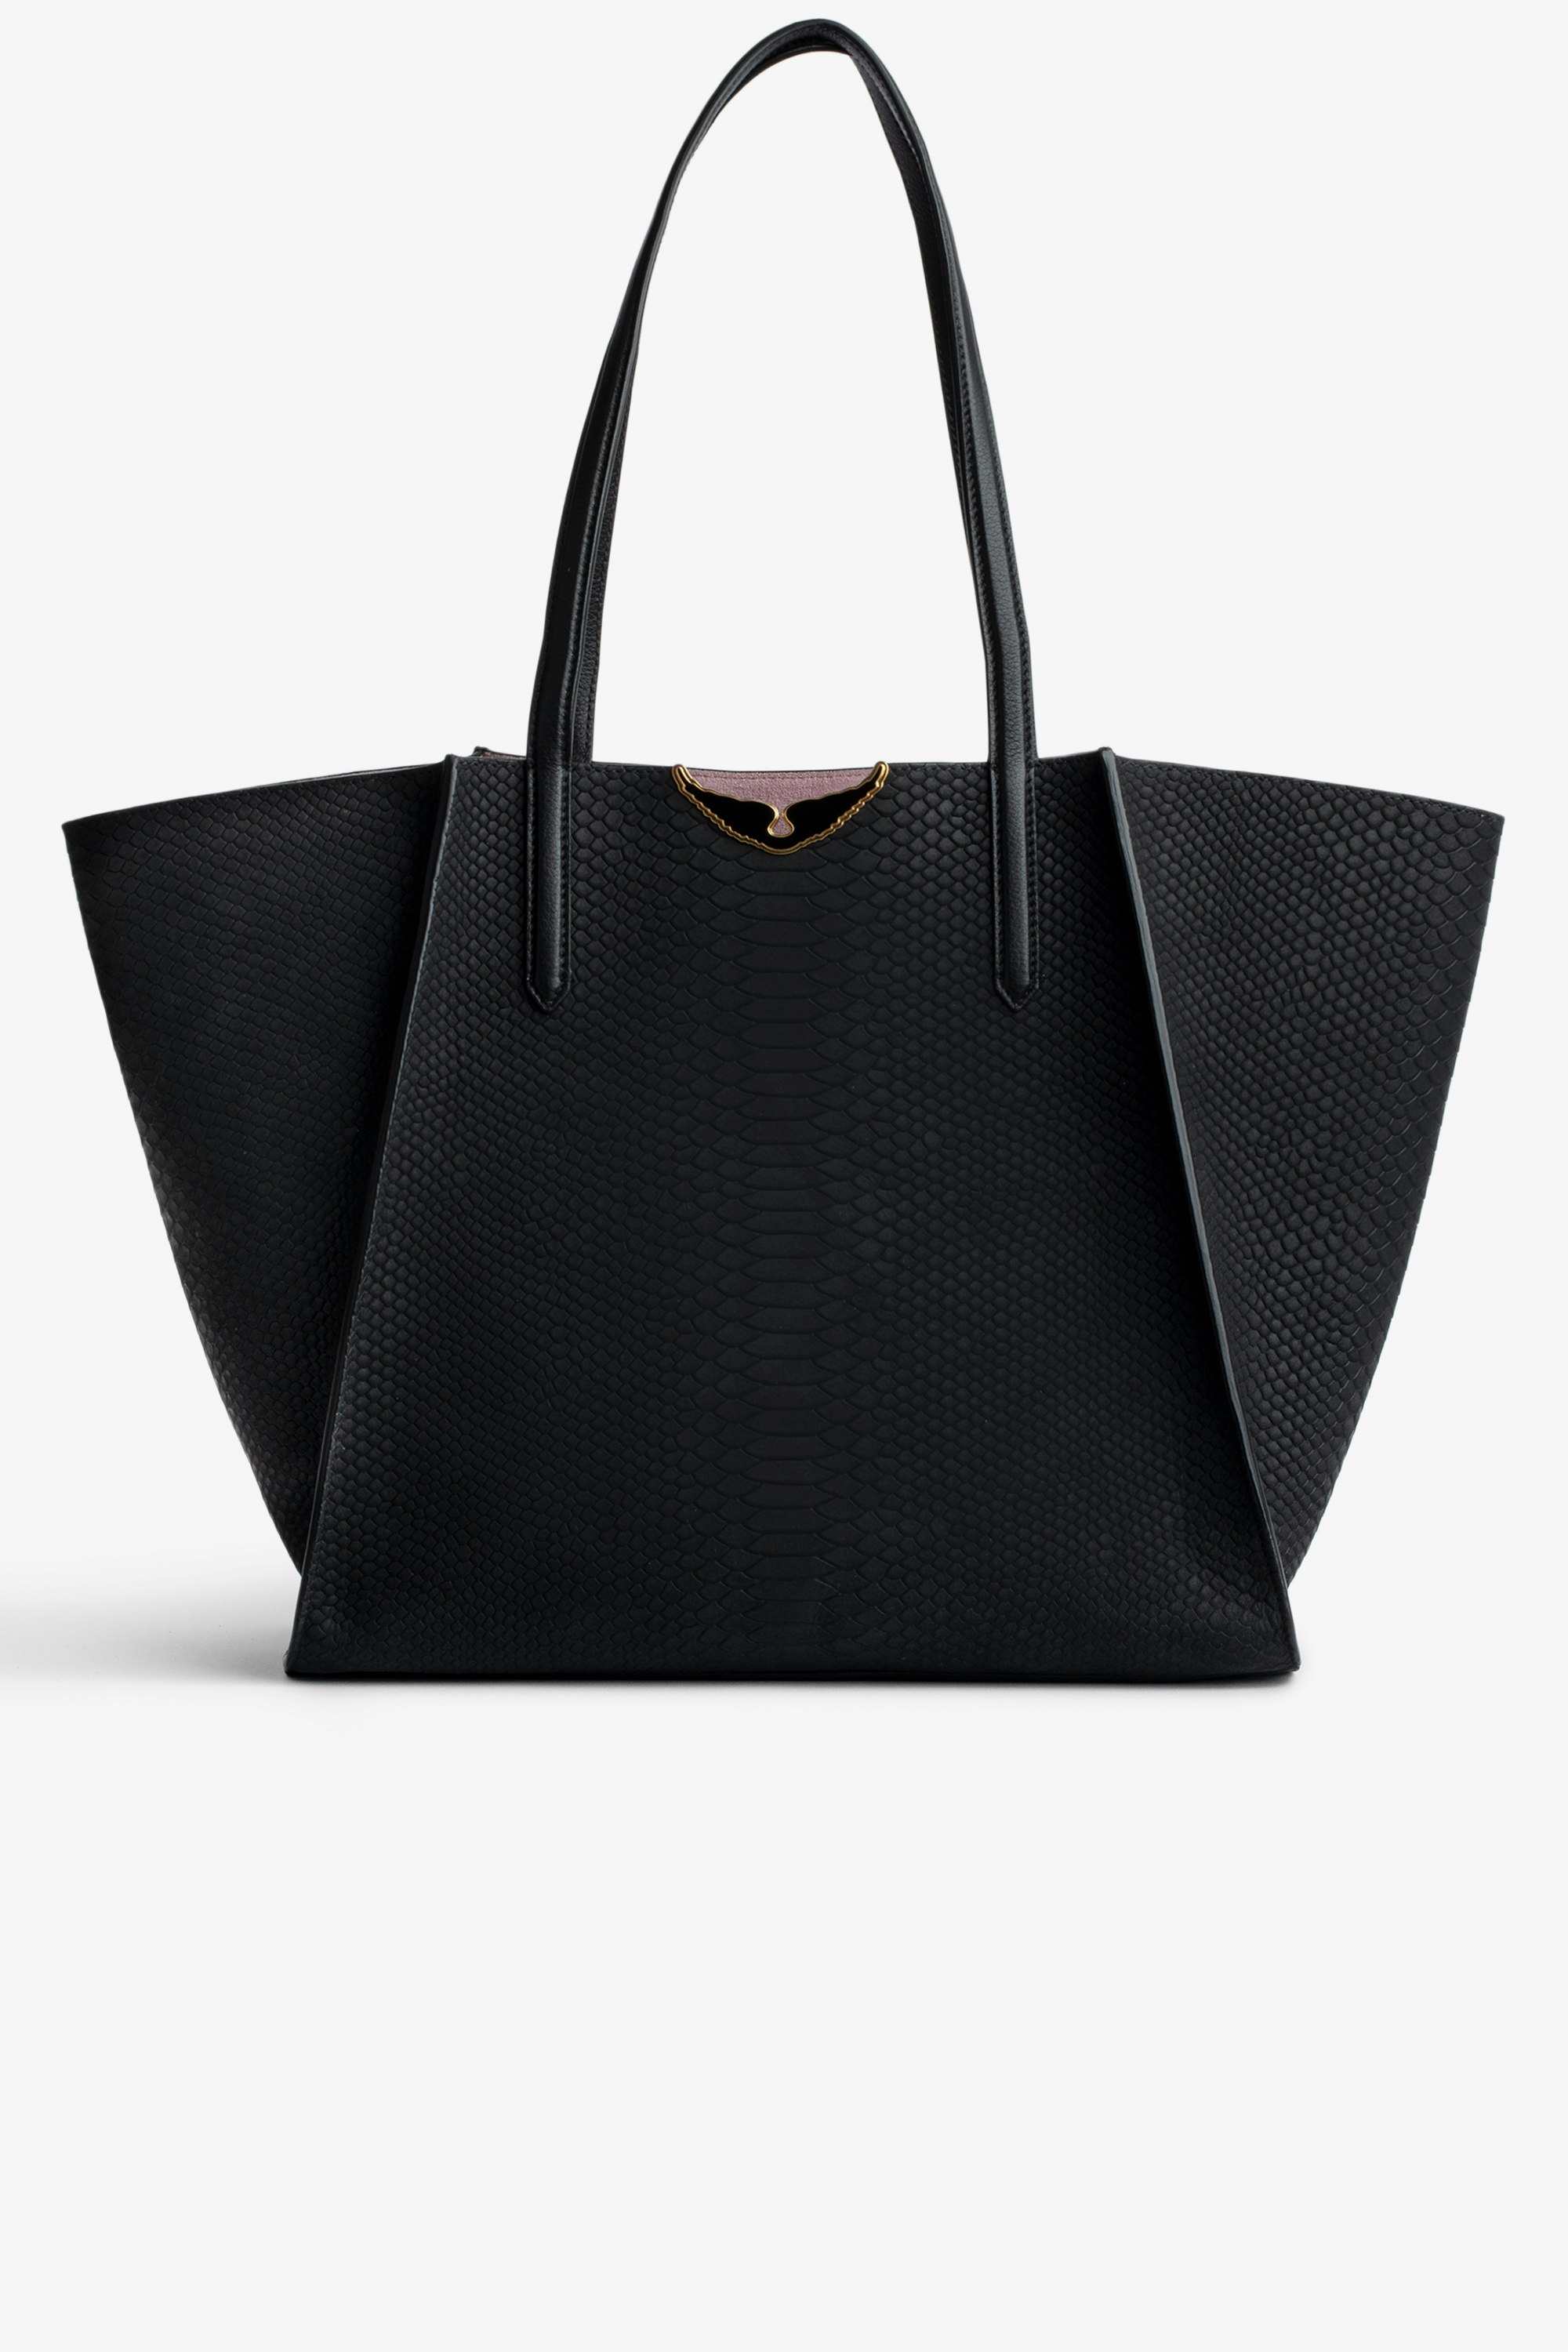 Tasche Le Borderline Soft Savage  Damen-Shopper zum Wenden aus schwarzem Leder in Python-Optik und rosafarbenem Veloursleder mit schwarz lackierten Flügeln